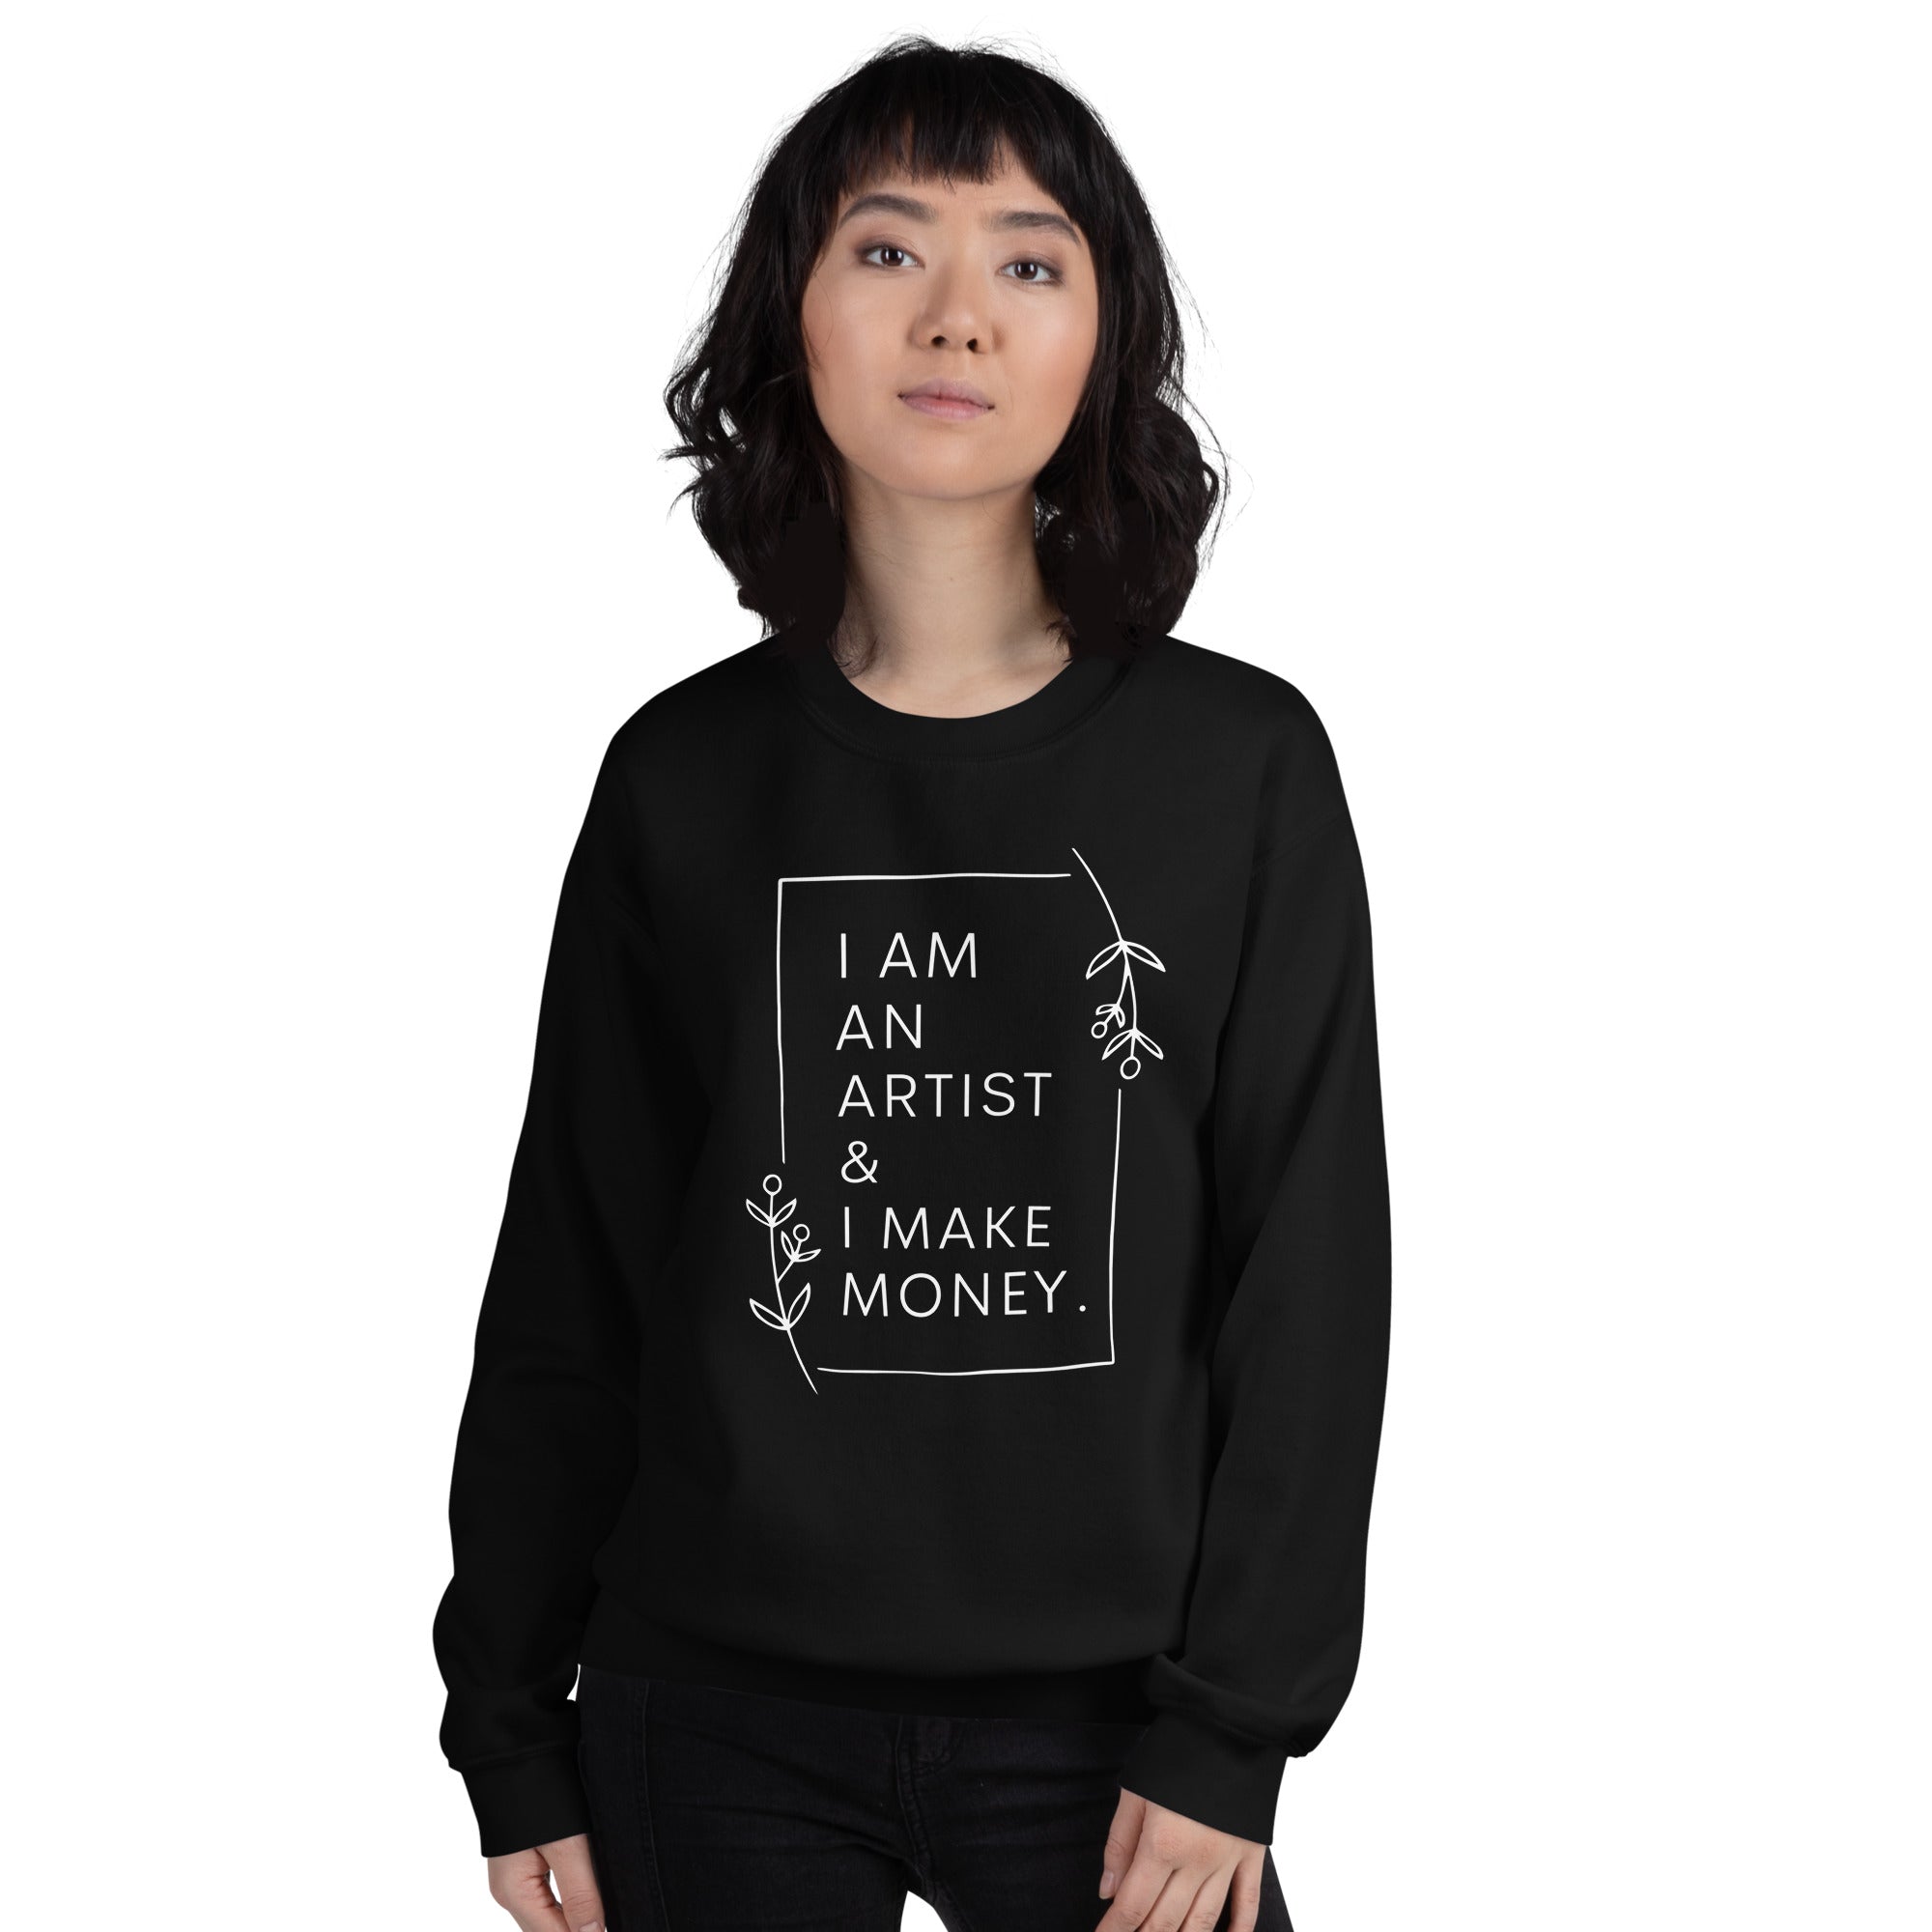 I am an artist & I make money sweatshirt